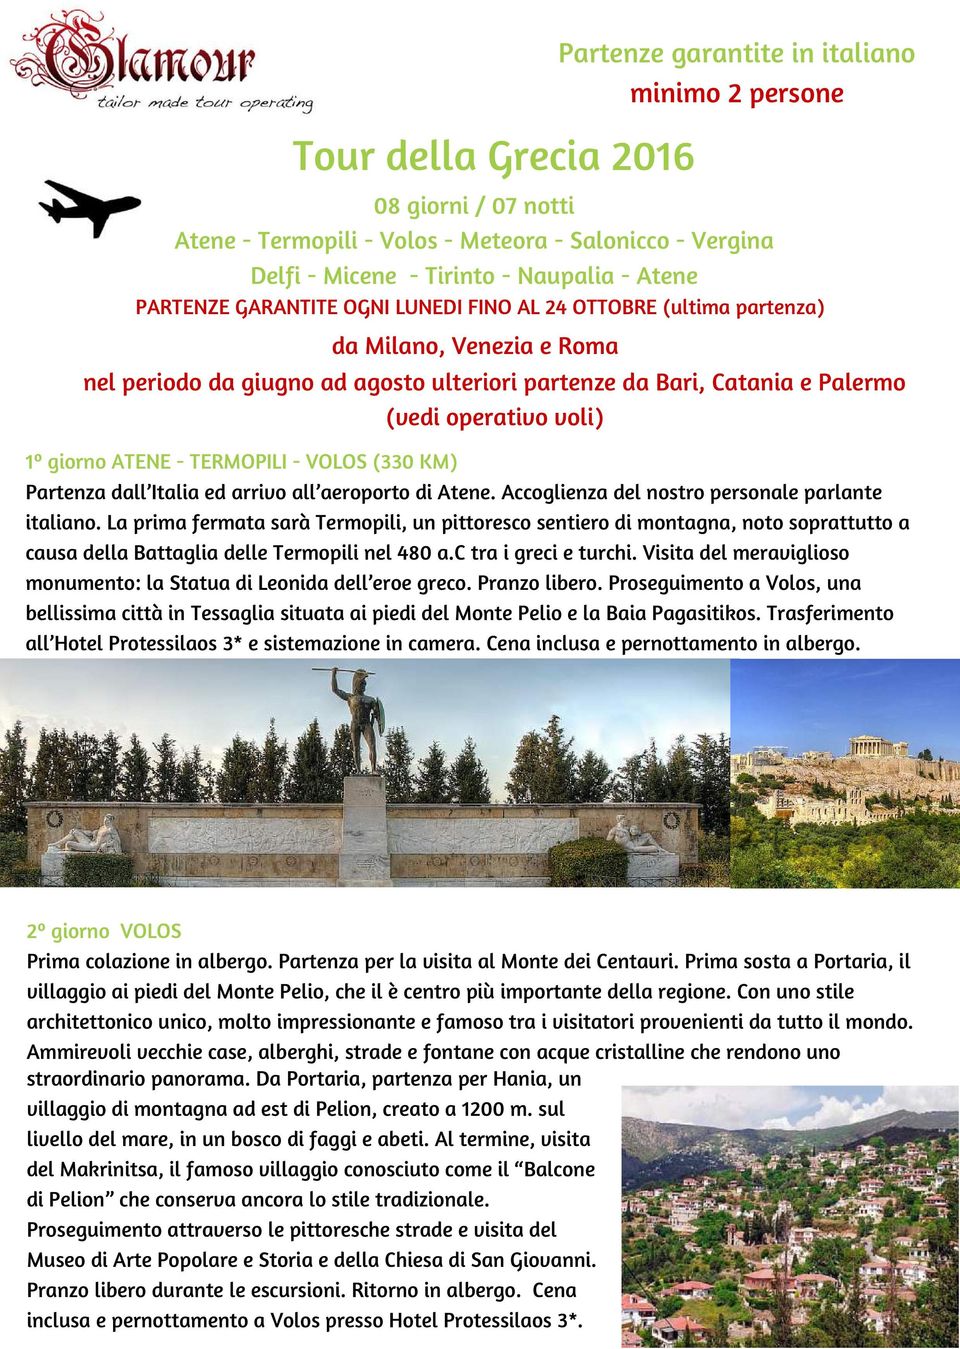 giorno ATENE - TERMOPILI - VOLOS (330 KM) Partenza dall Italia ed arrivo all aeroporto di Atene. Accoglienza del nostro personale parlante italiano.